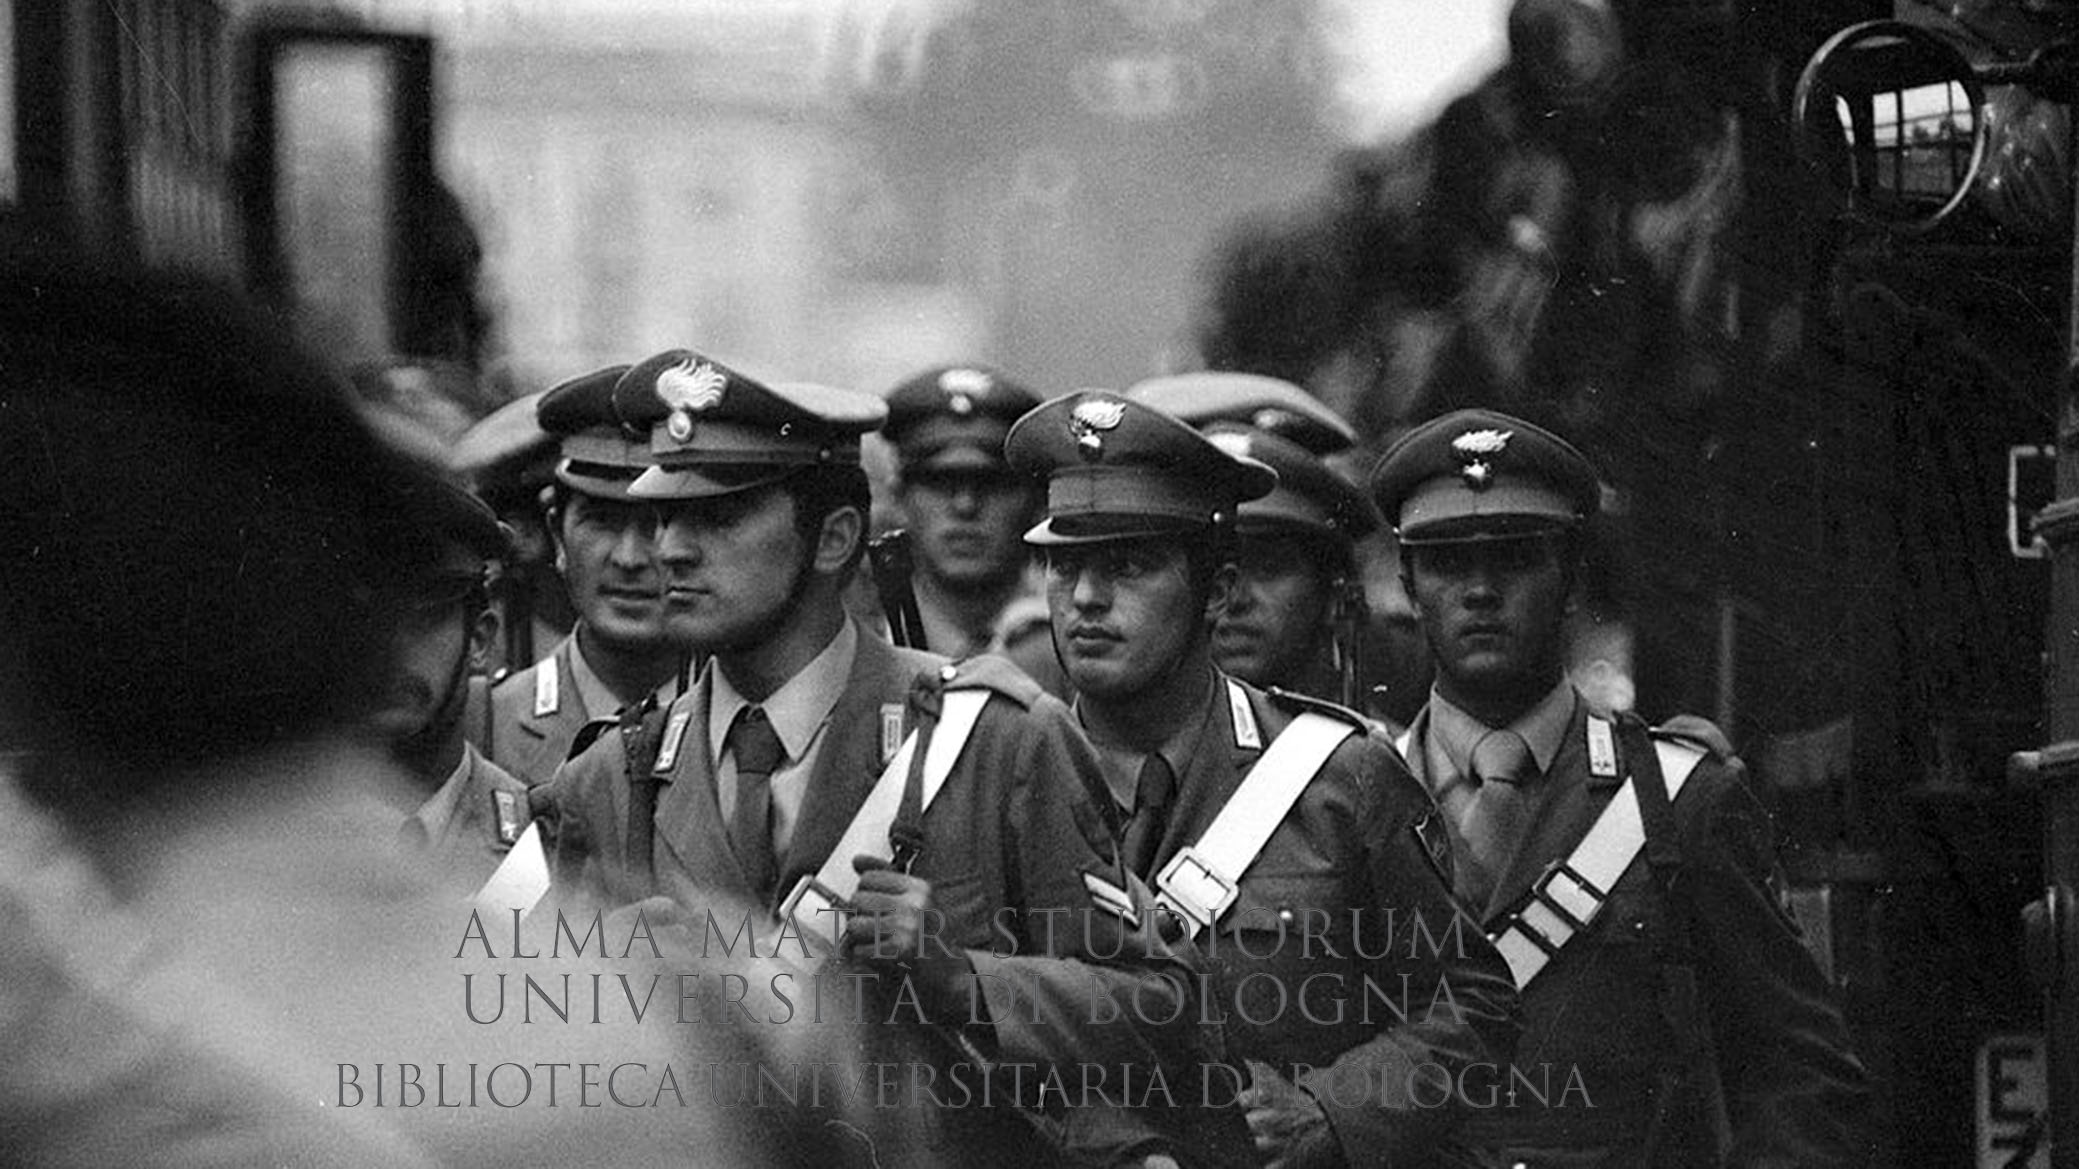 1973: Rivolte al carcere di Rebibbia: intervento da parte di carabinieri. Roma, 1973